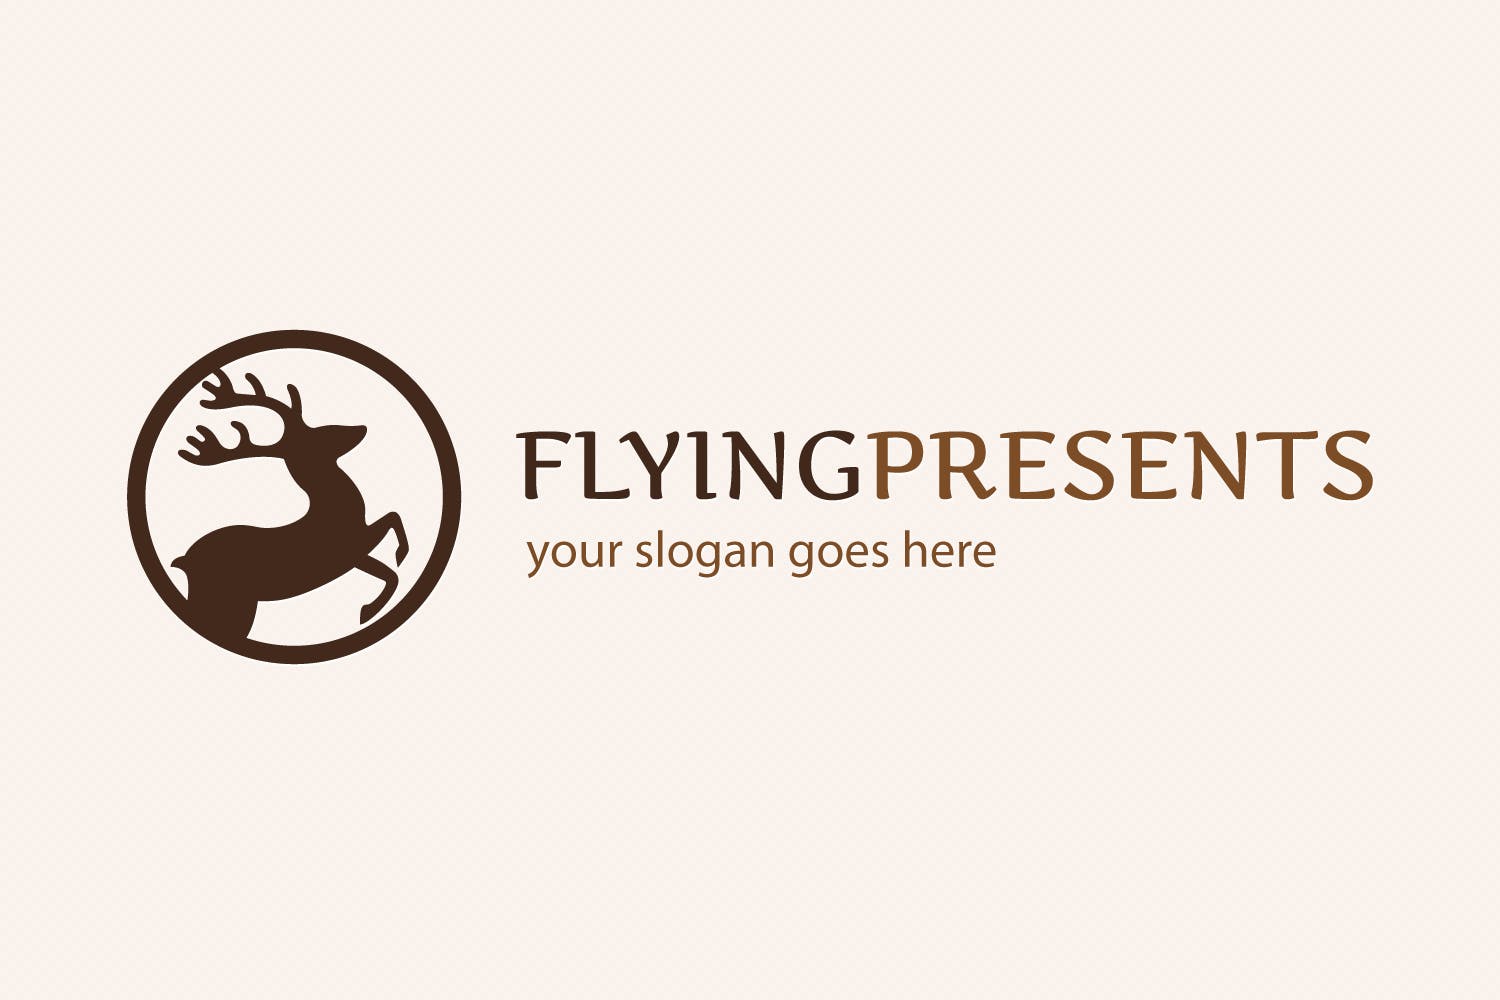 飞行驯鹿图形Logo设计模板 Flying Reindeer Logo插图4